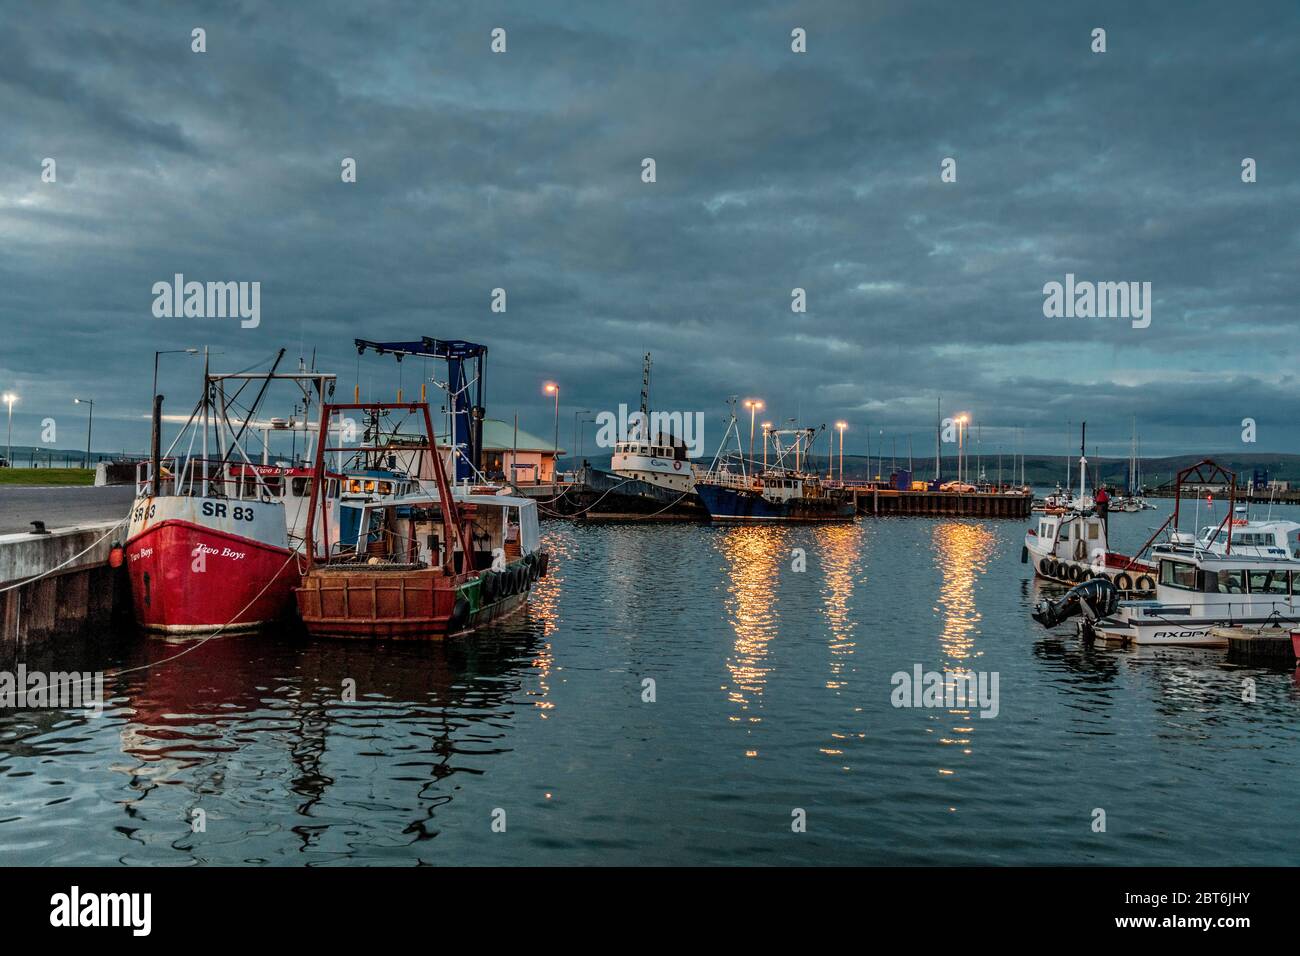 Stranraer Harbour at dusk Stock Photo